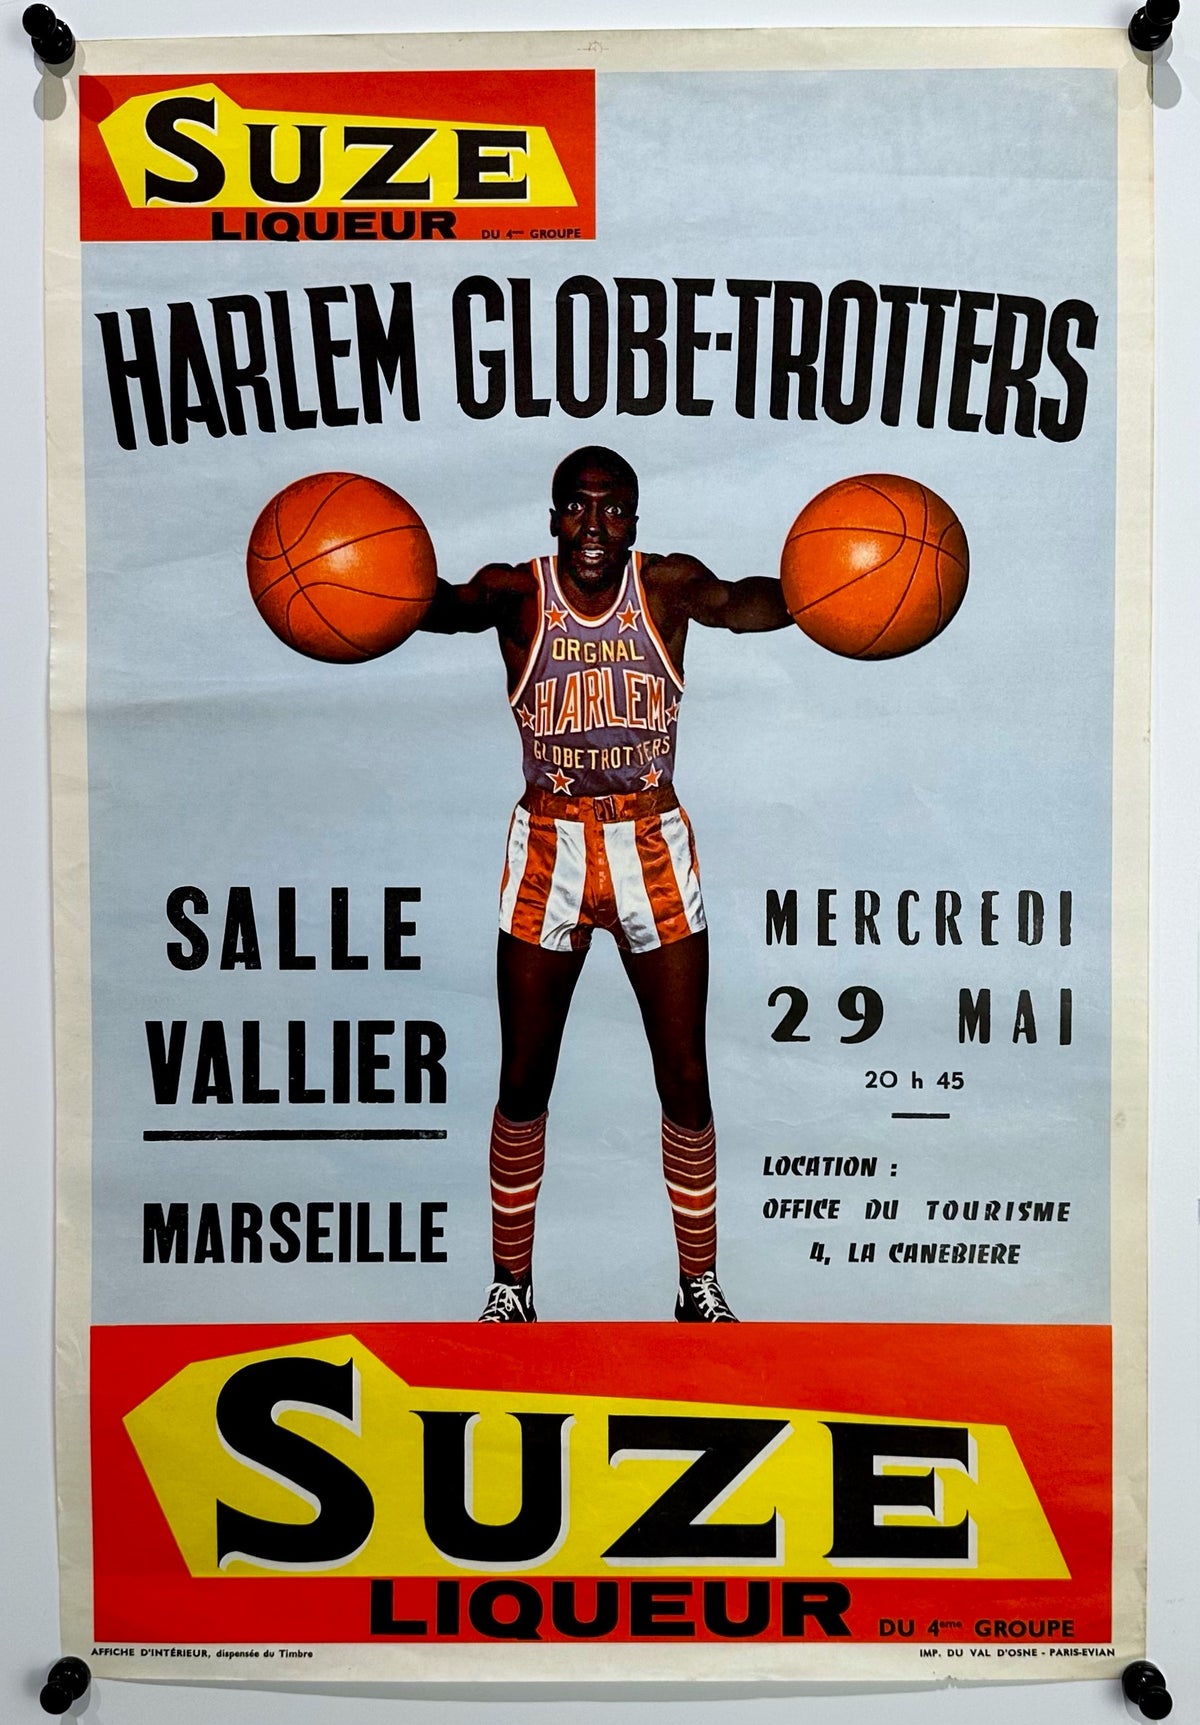 Harlem Globe Trotters- Suze Liqueur - Authentic Vintage Poster